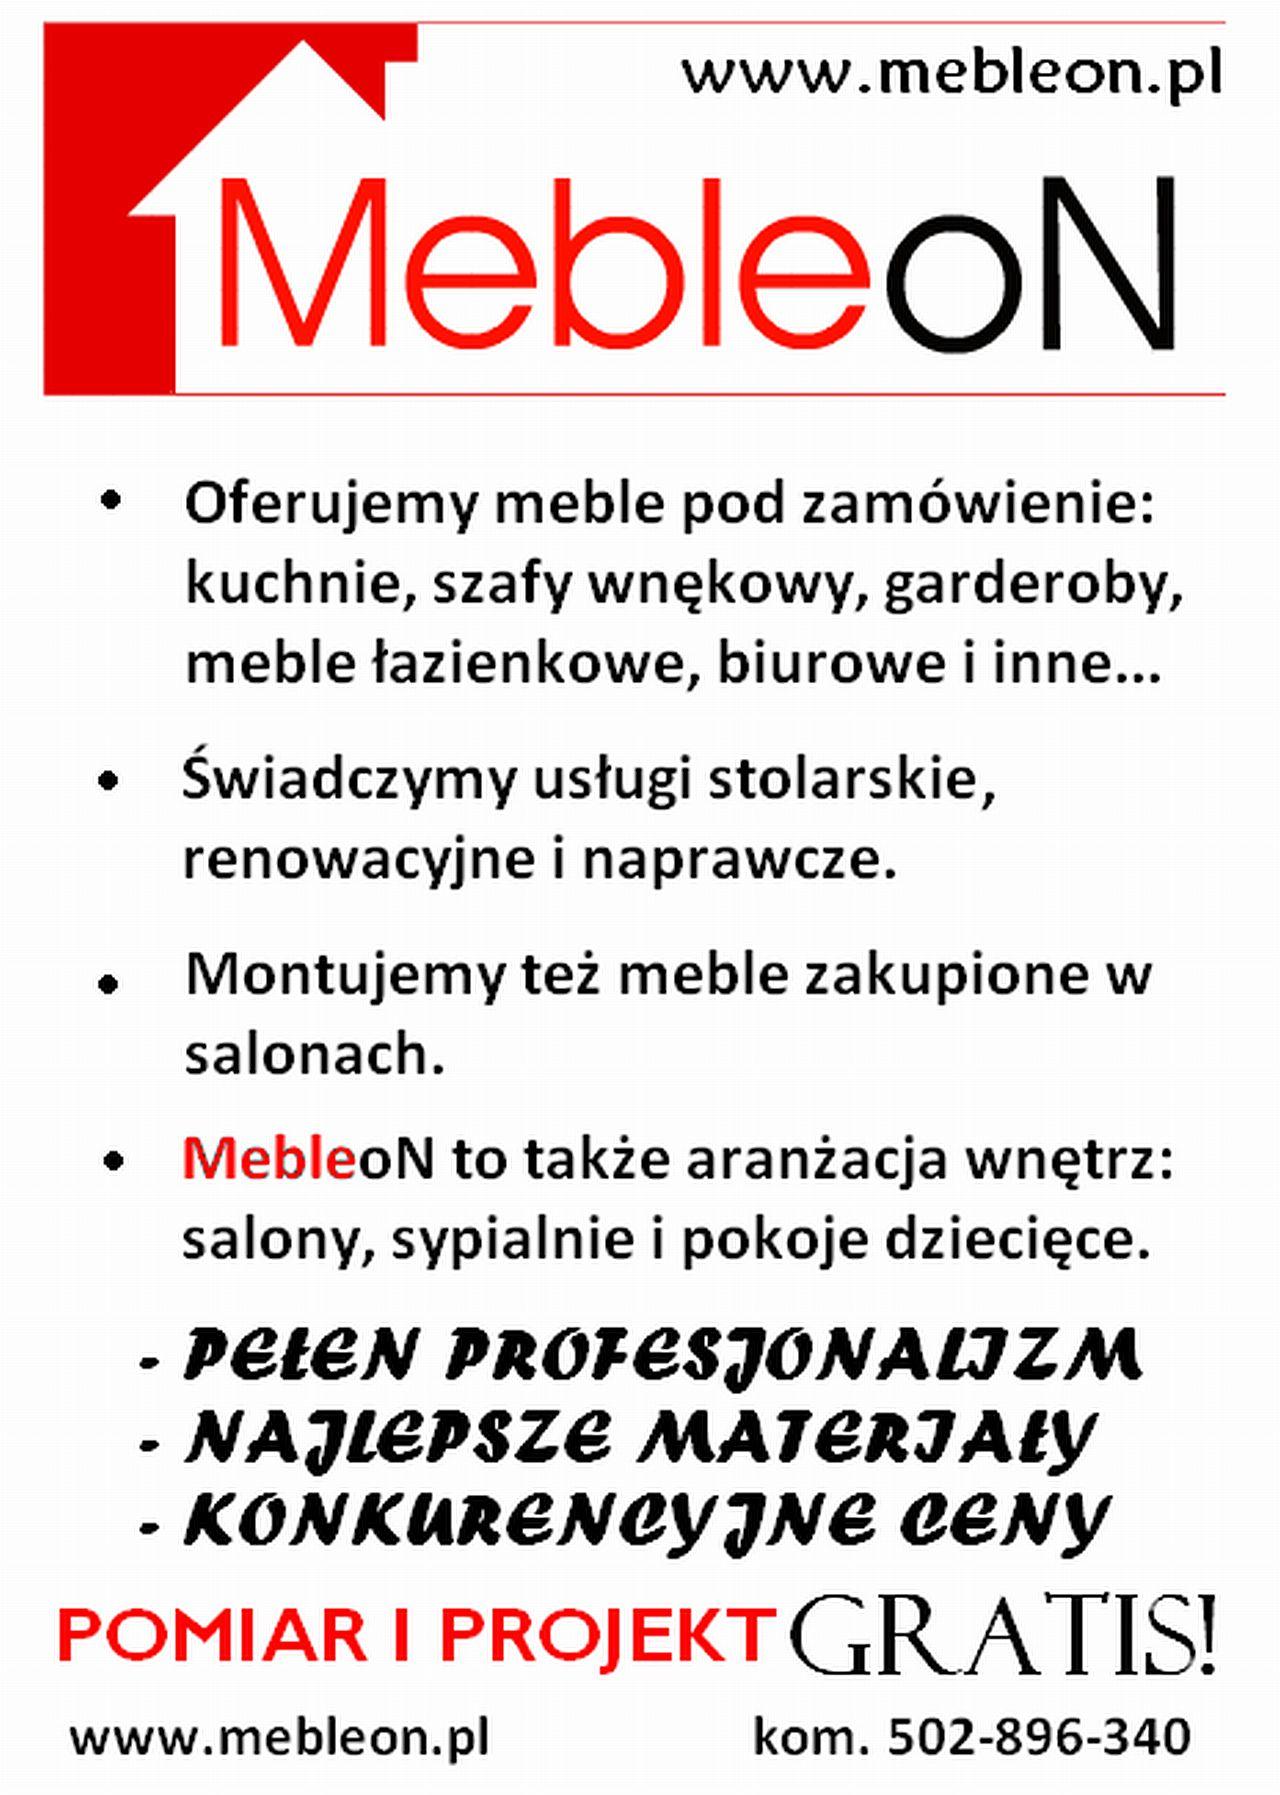 Mebleon- meble na zamówienie, Olsztyn, warmińsko-mazurskie